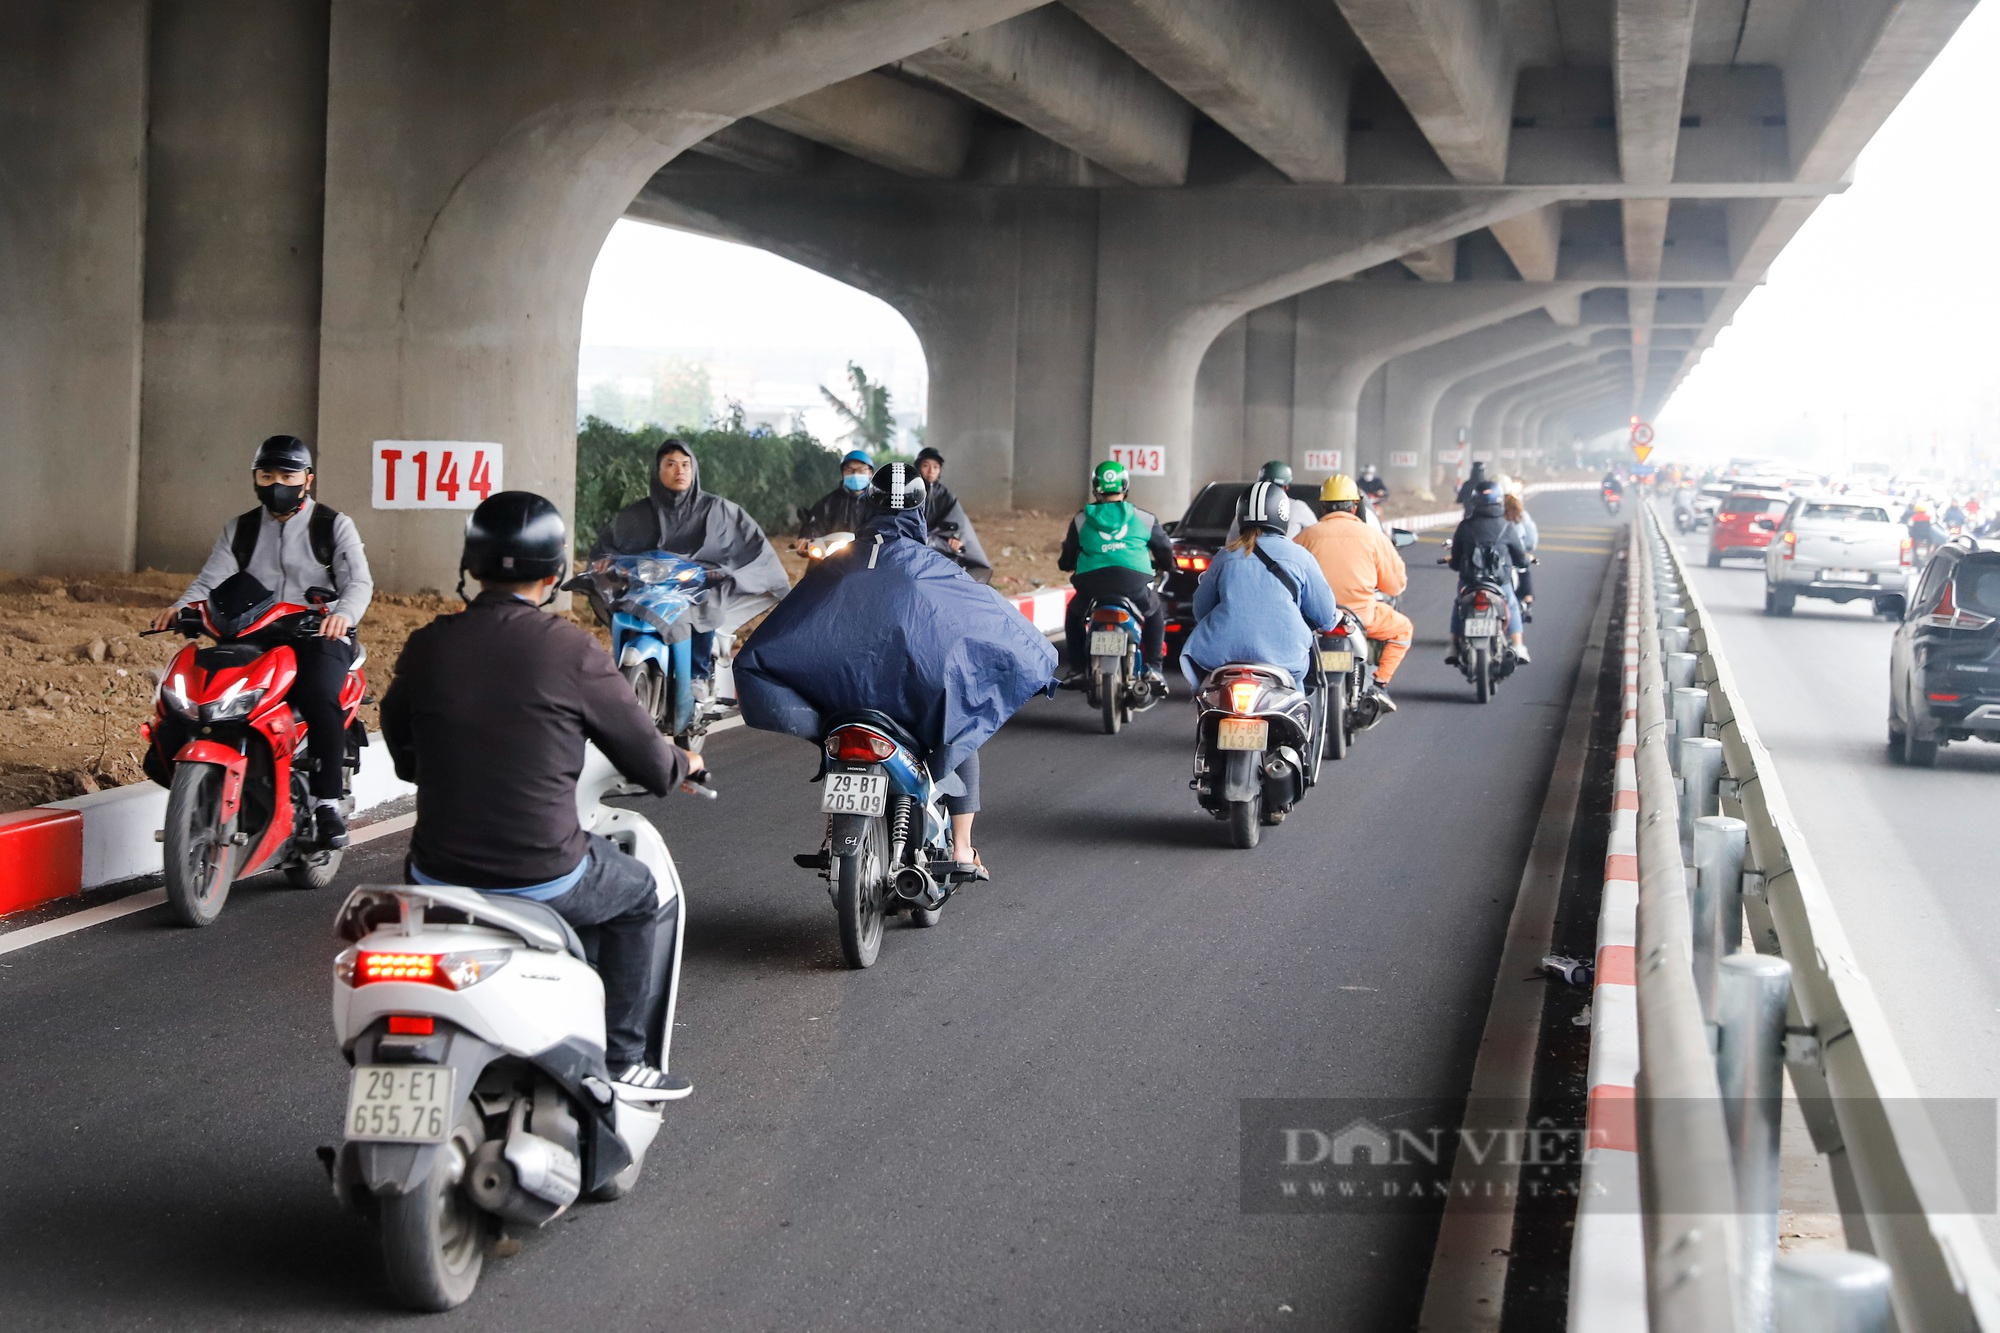 Hàng đoàn xe máy ùn ùn đi ngược chiều tại đoạn đường mới mở tại Hà Nội - Ảnh 6.